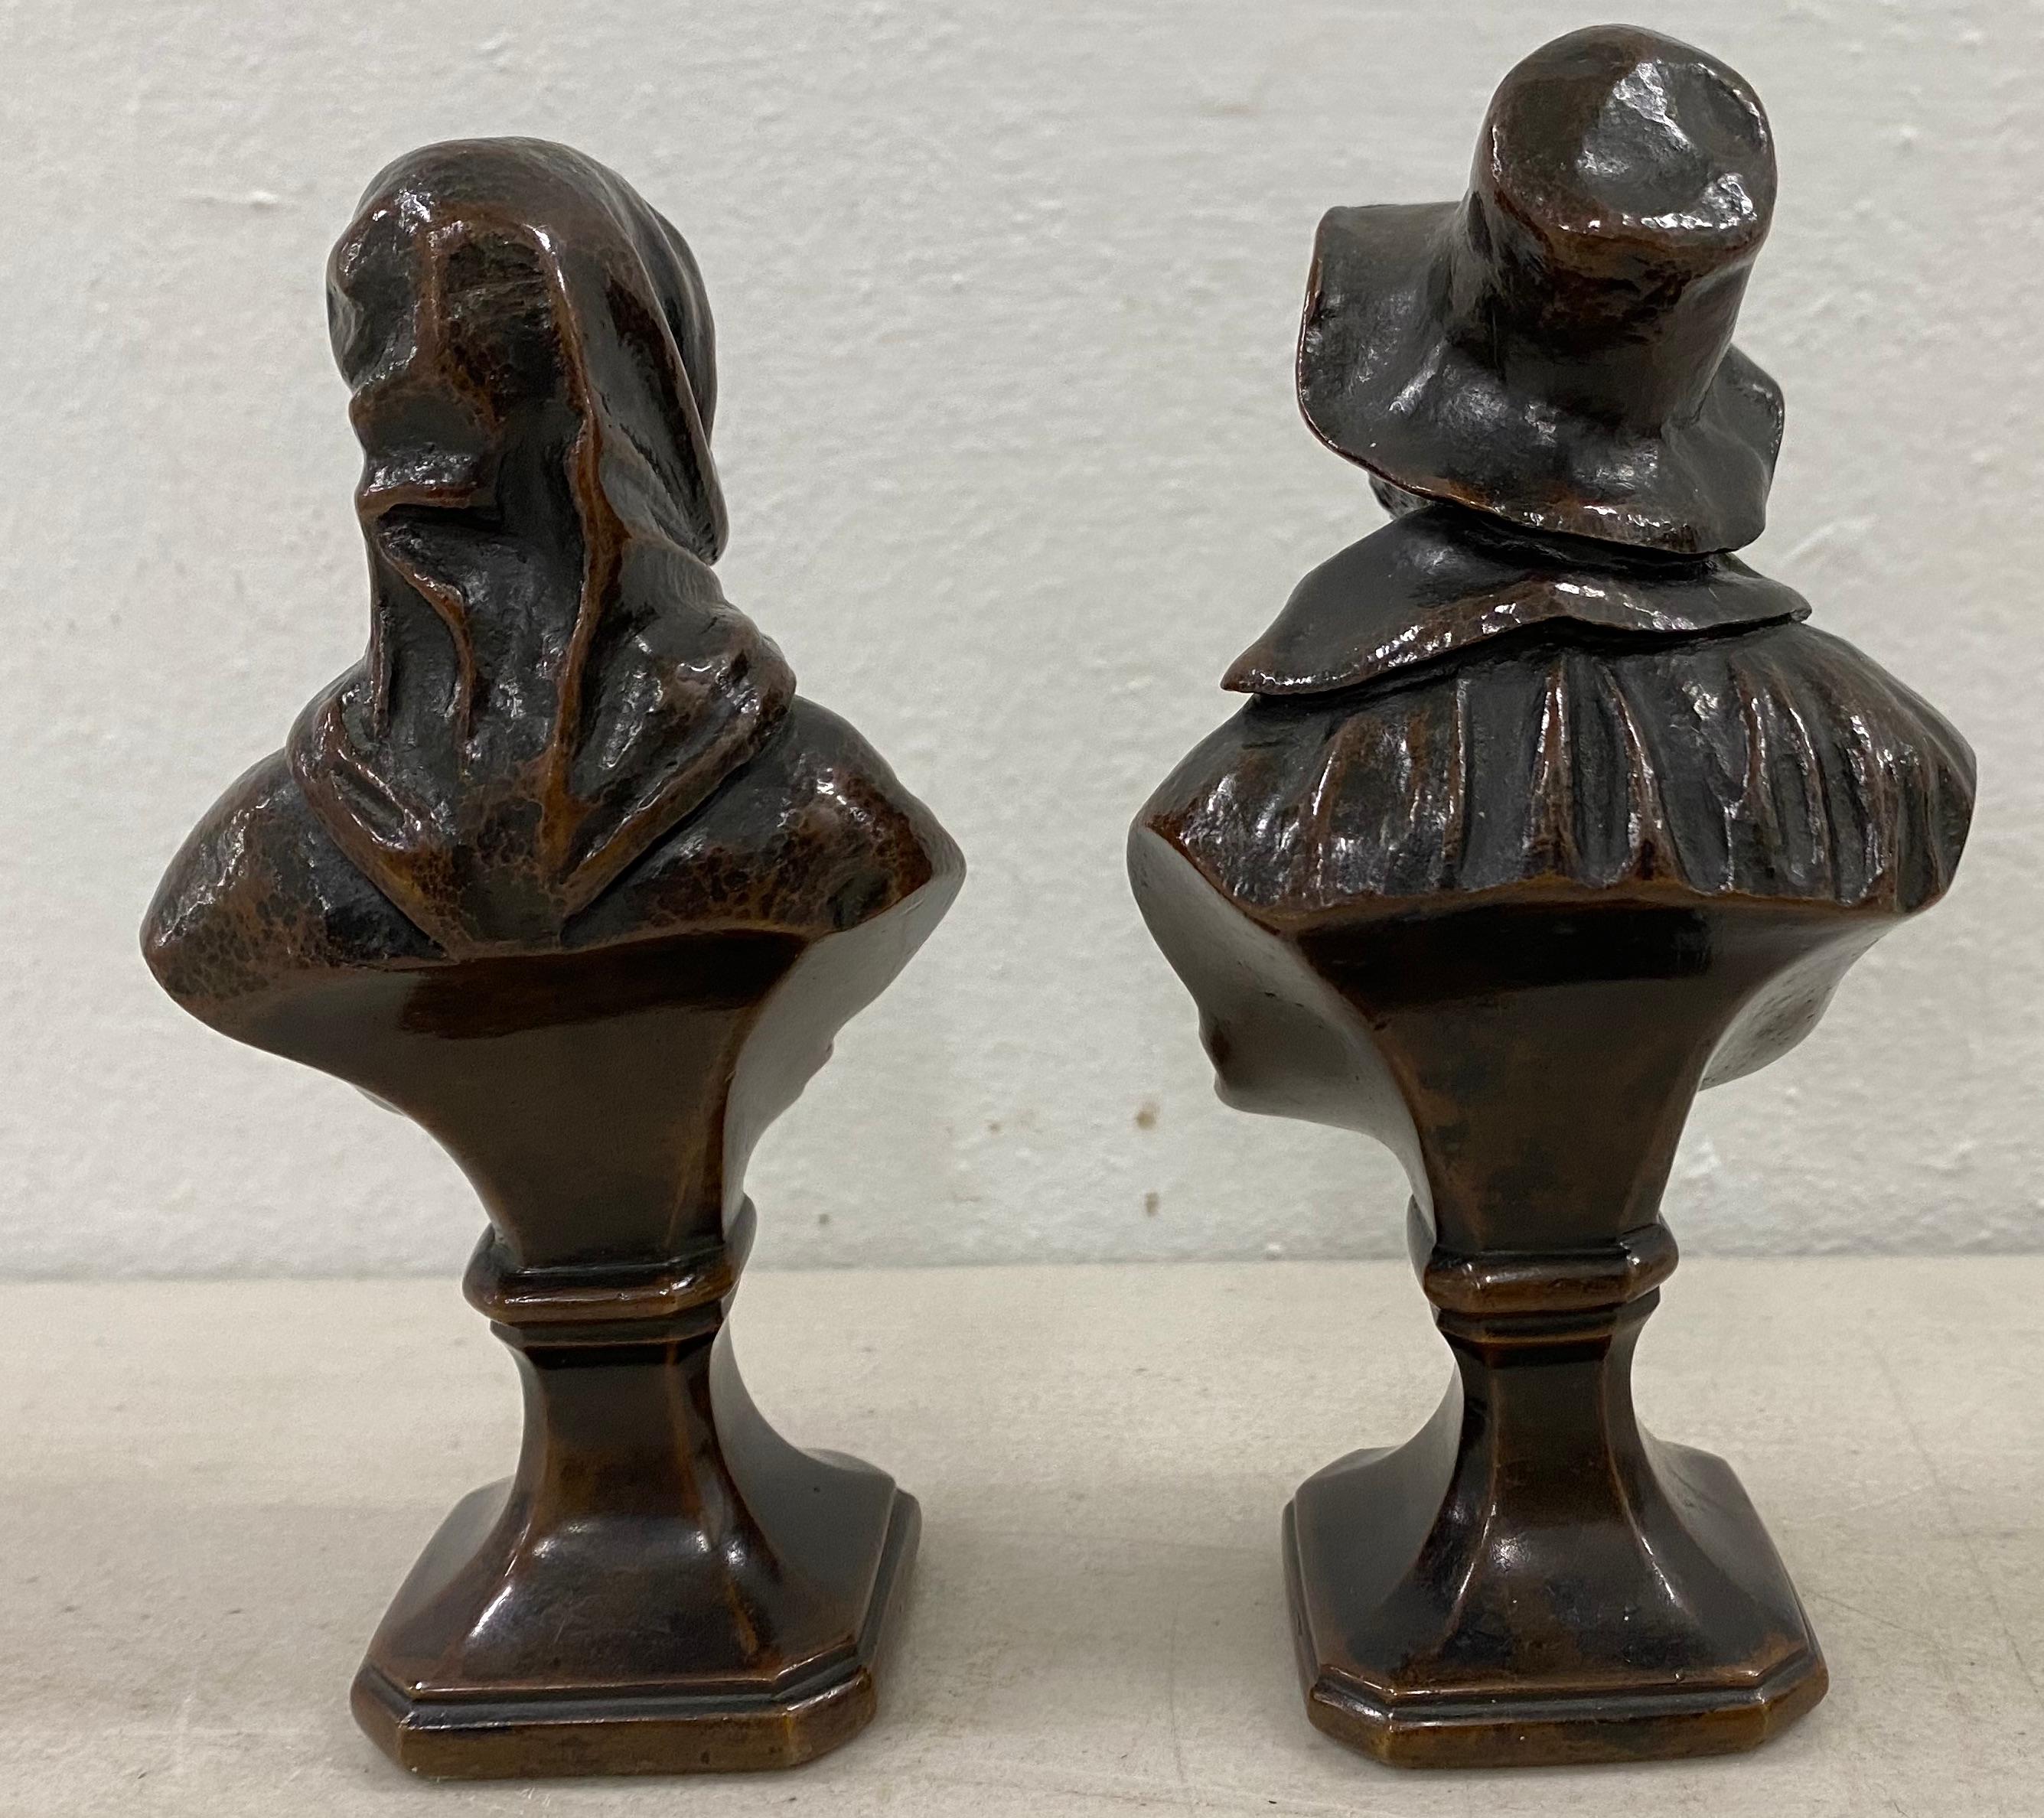 sculptures en bronze d'un vieil homme et d'une femme du 19ème siècle

Ces charmantes sculptures en bronze ont une riche patine qui ne vient qu'avec l'âge

Chaque bronze mesure 2